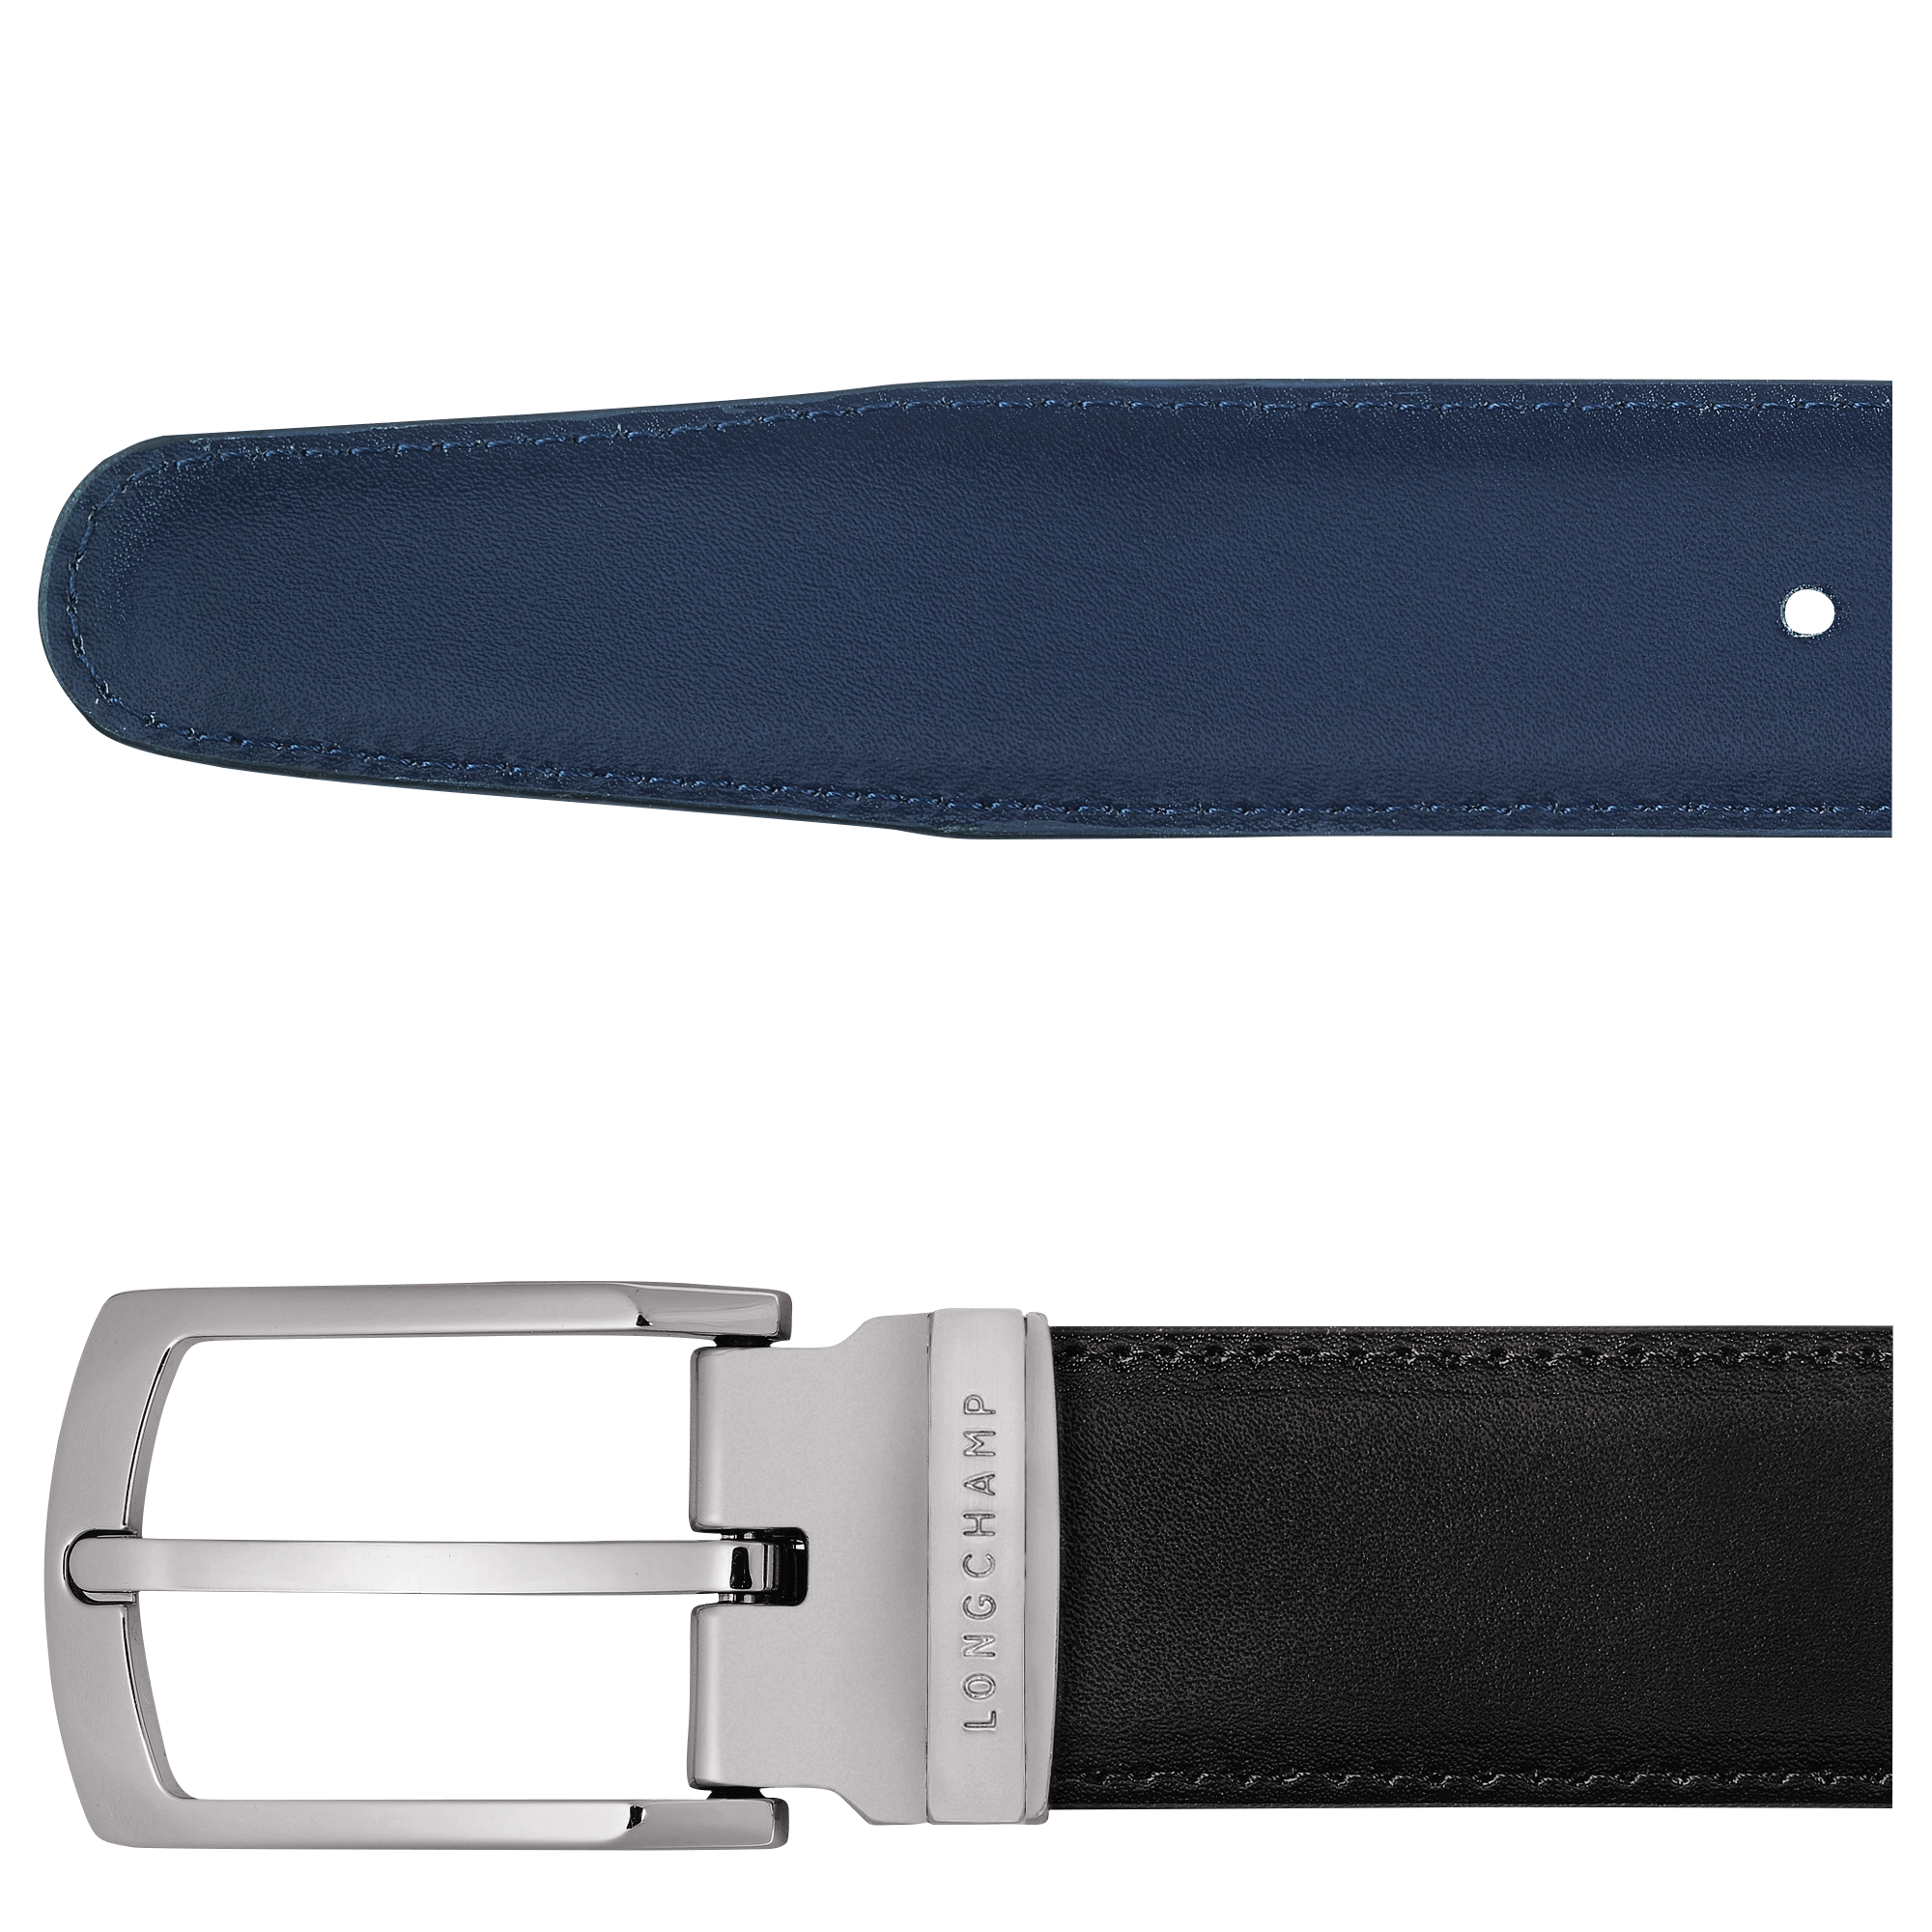 Delta Box Men's belt, Black/Navy